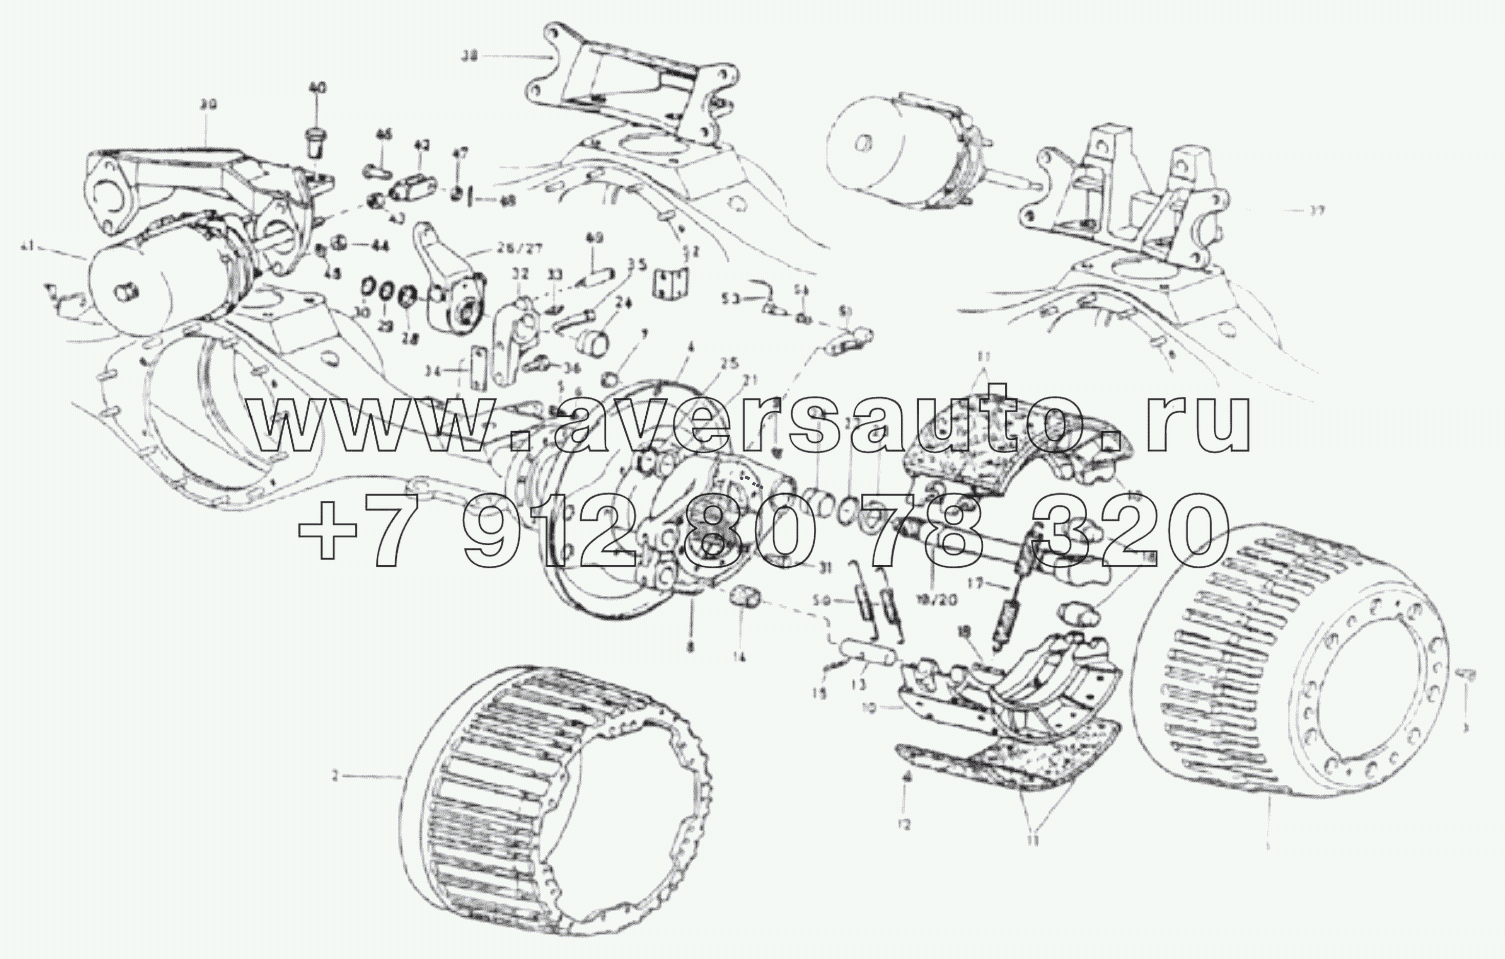  1S325124002H1 Rear axle (5.73, widened, cast steel)-rear axle brake